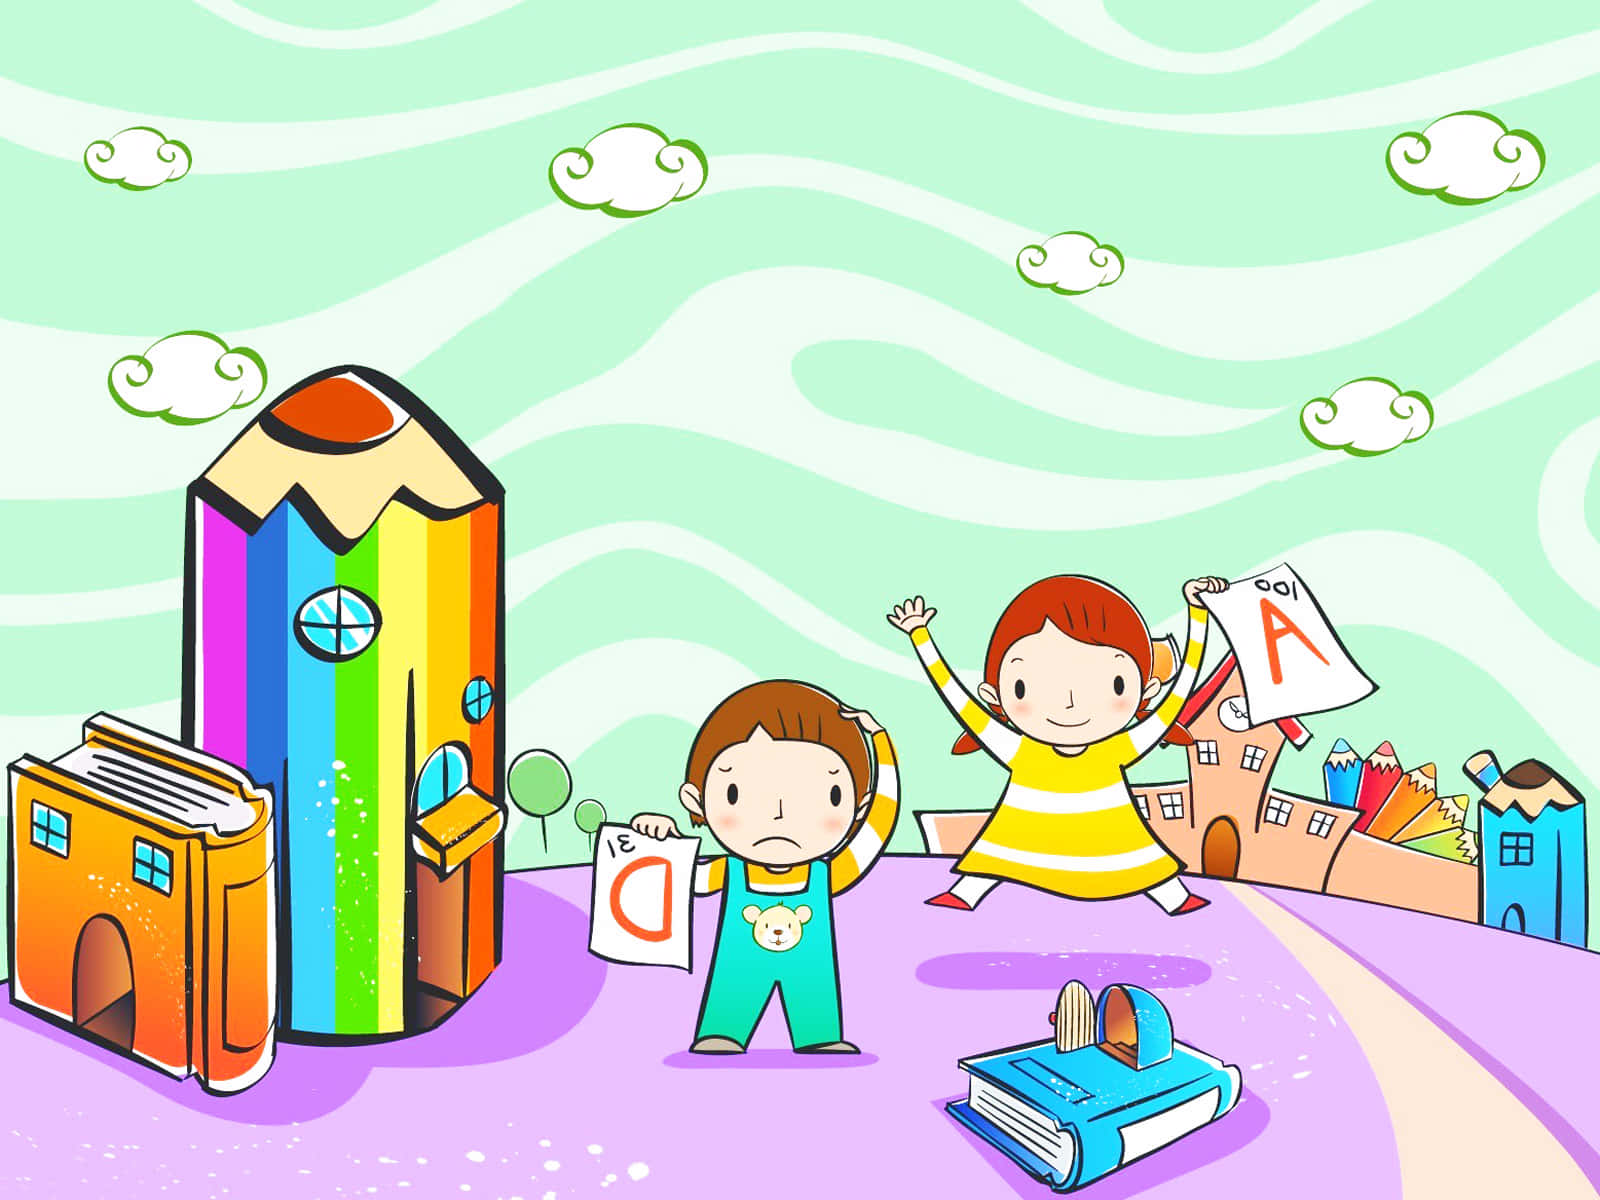 Einecartoon-zeichnung Von Zwei Kindern, Die Mit Einem Stift Und Einem Buch Spielen.